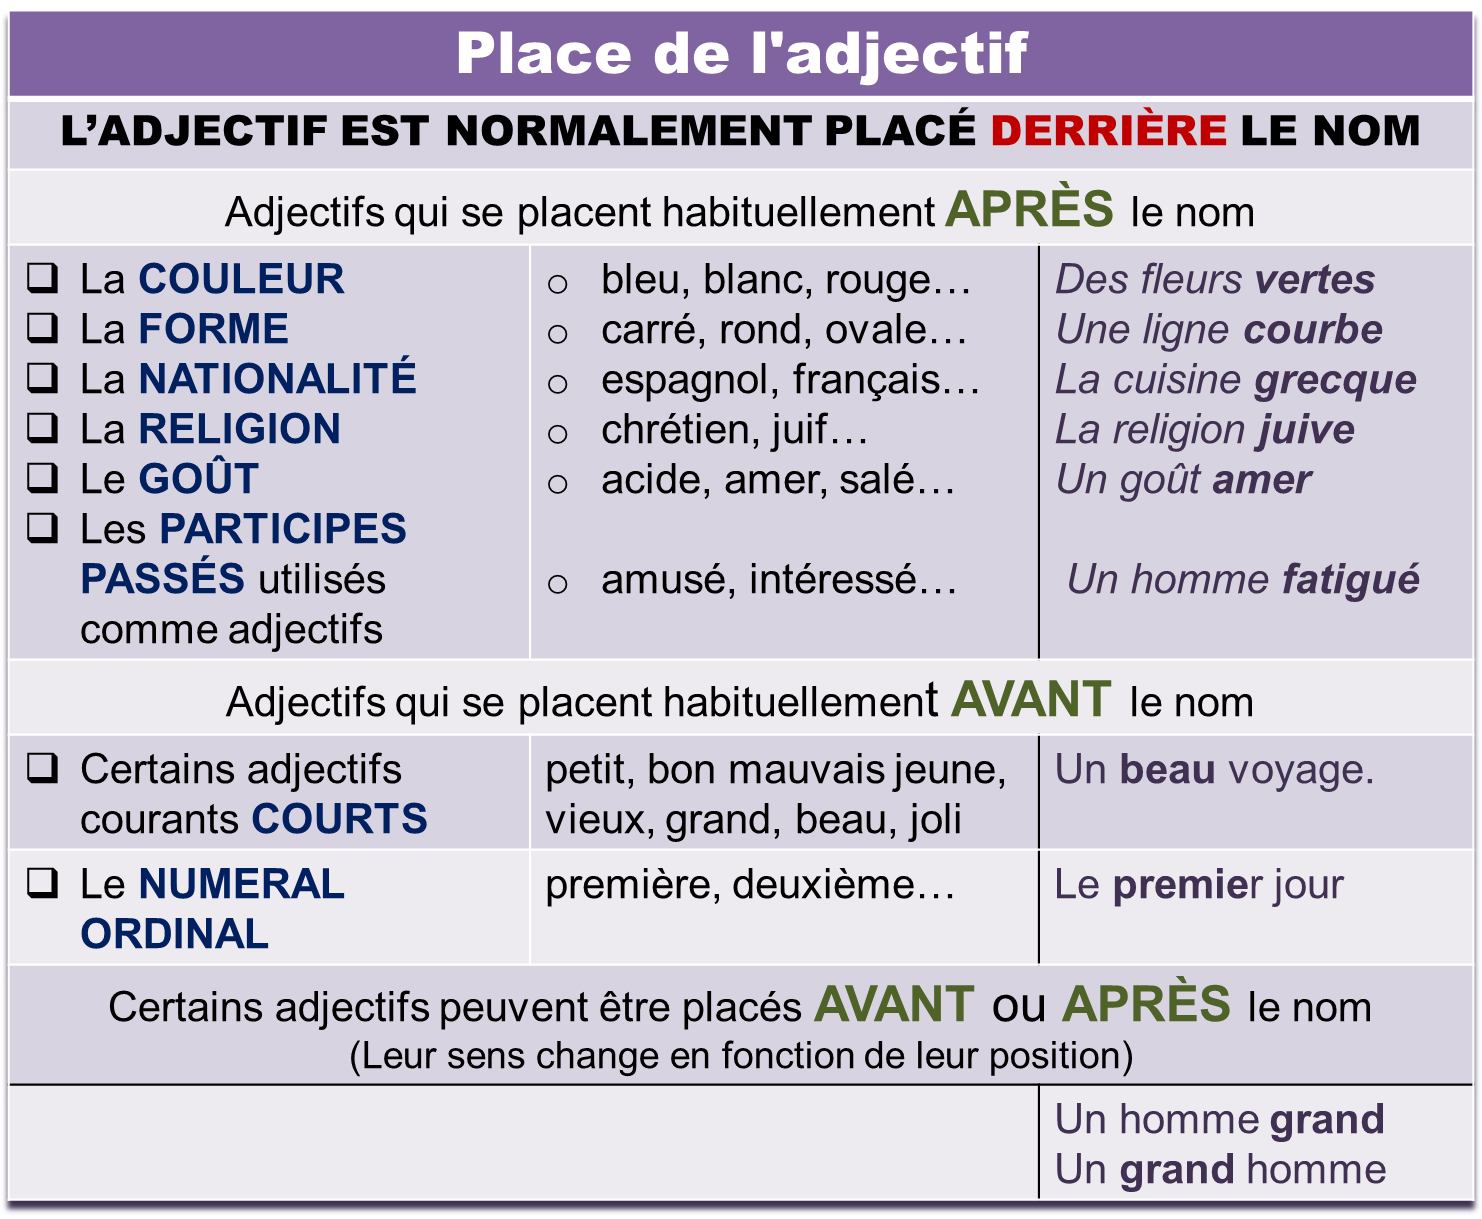 Француз прилагательное. Adjectif французский язык. Les adjectifs во французском. Французский прилагательные adjectifs. Сравнение во французском языке.